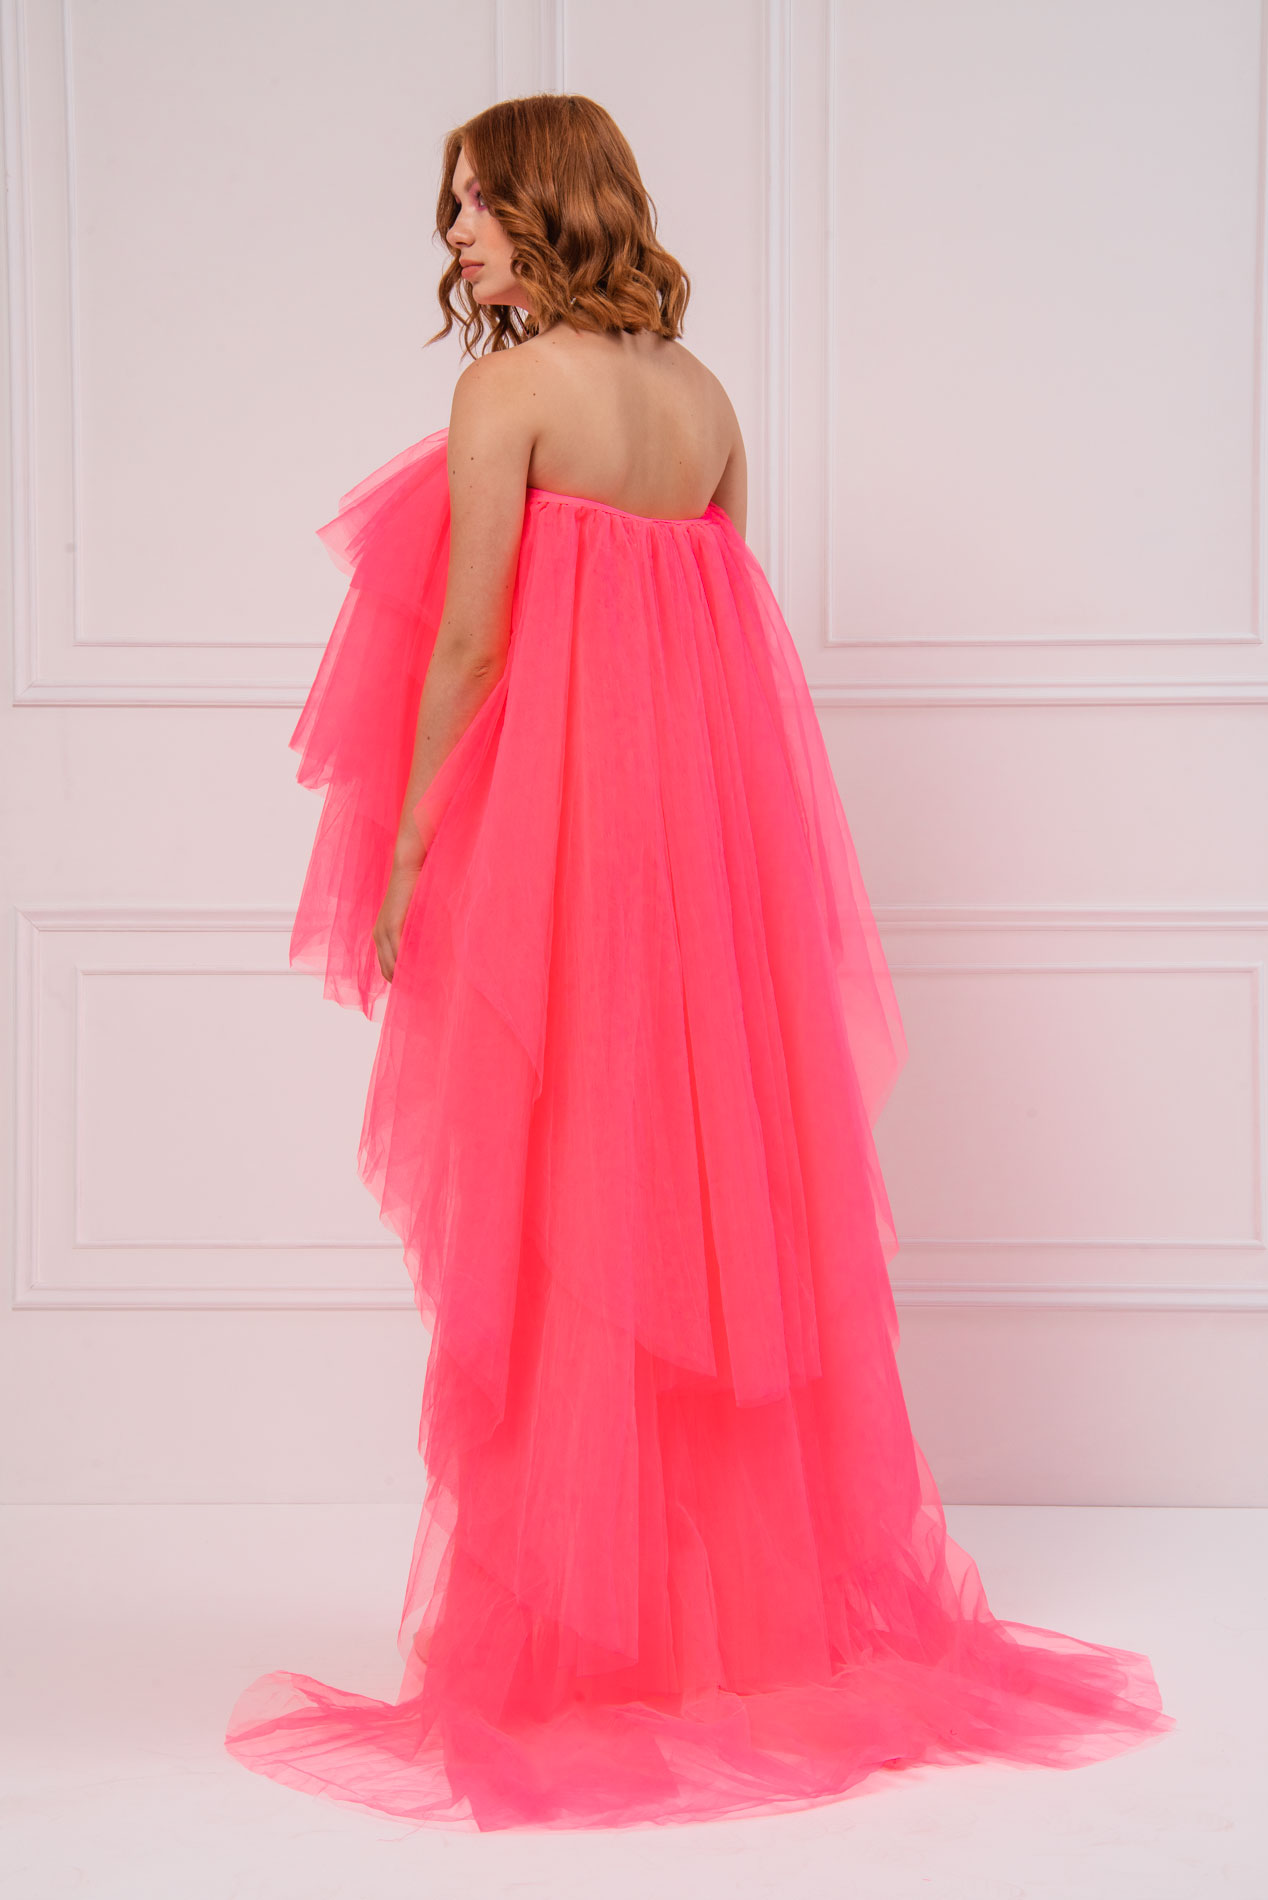 Wholesale Strapless Ruffle Neon Pink Mini Dress